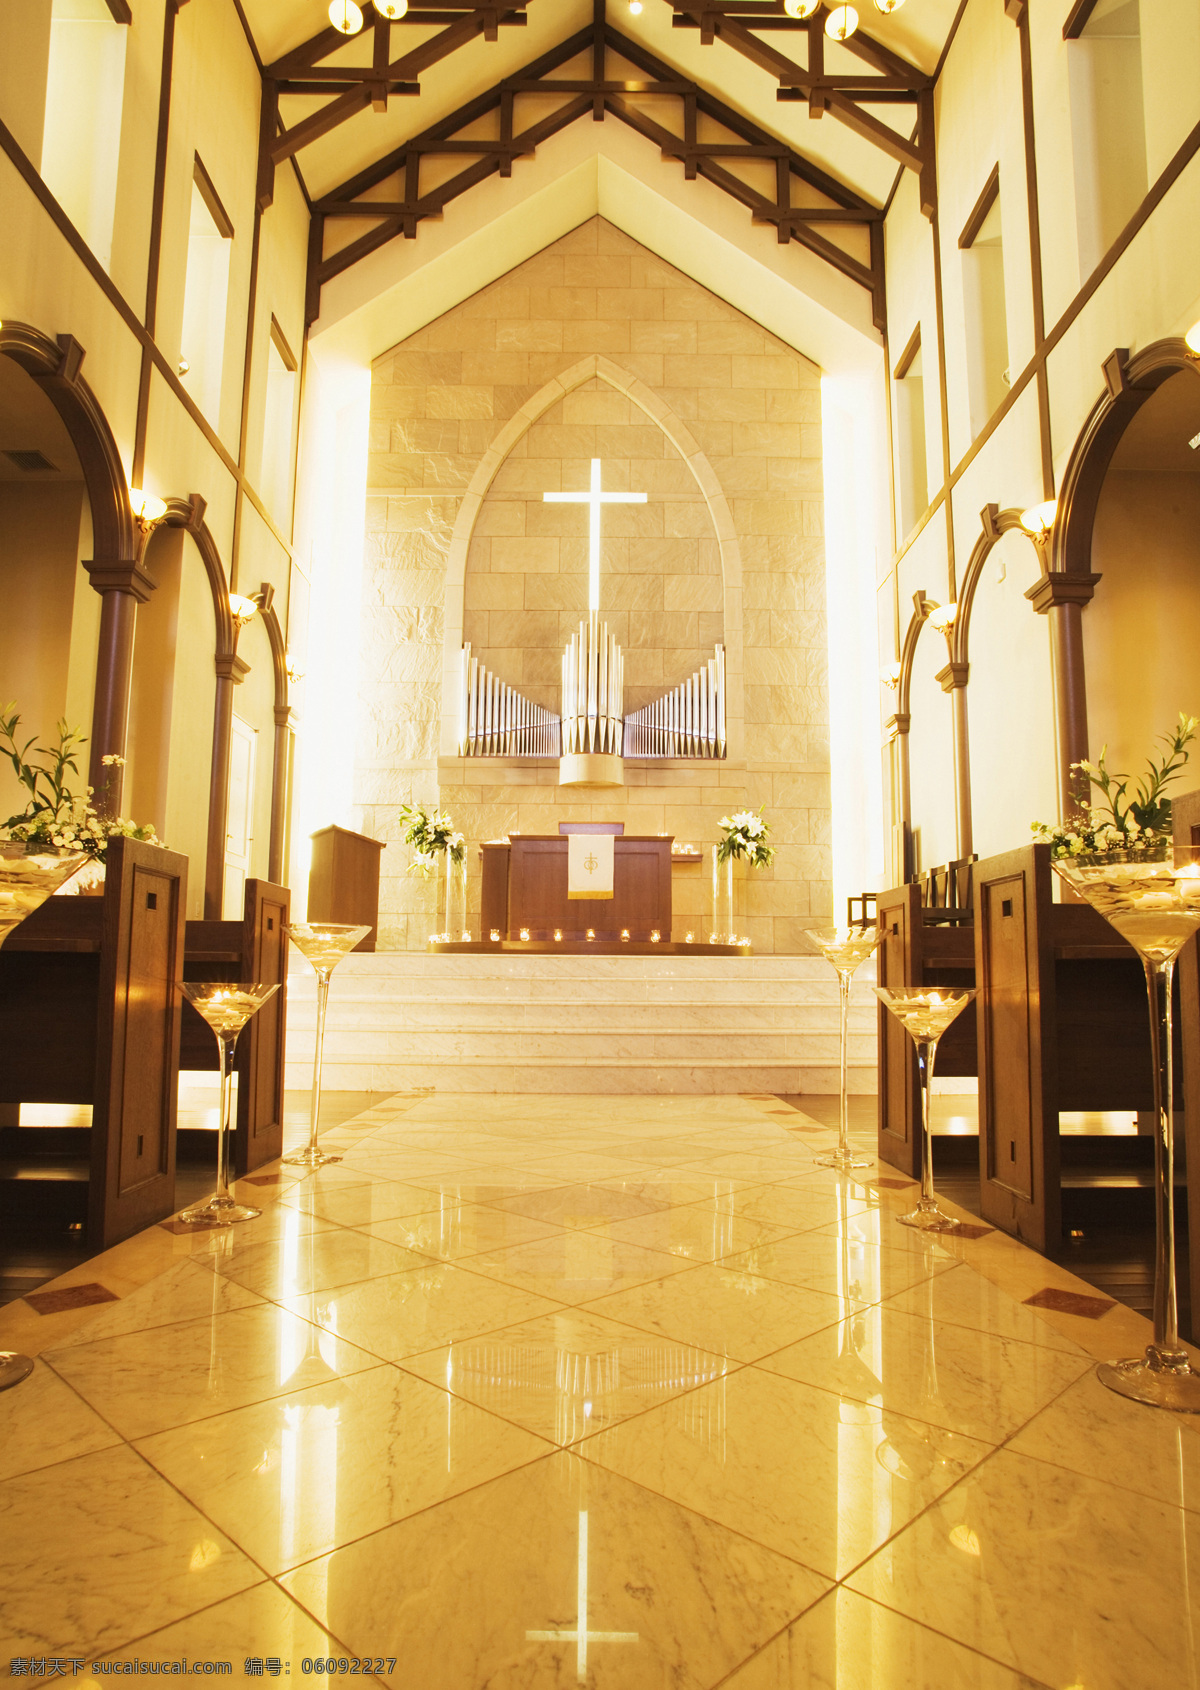 婚礼 教堂 背景 场景 婚纱背景 建筑 欧式风格 背景图片